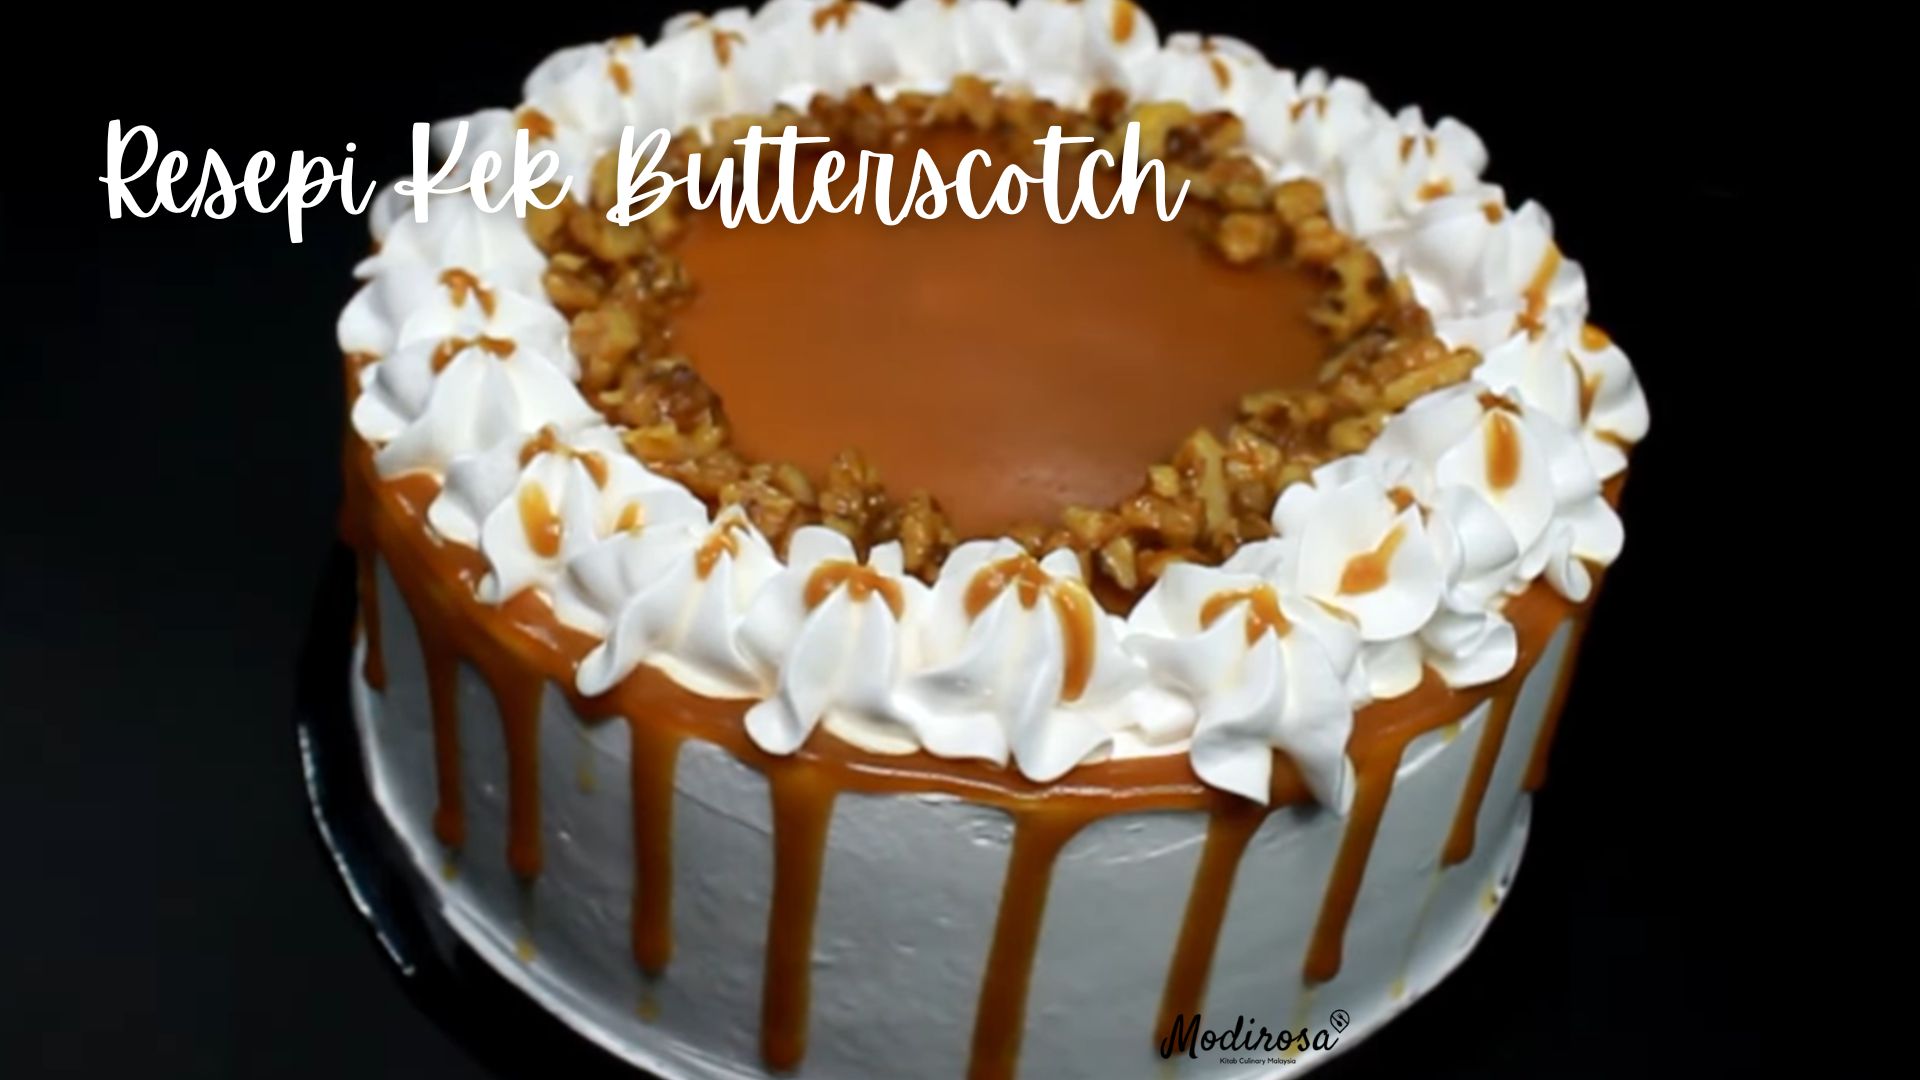 Resepi Kek Butterscotch 1